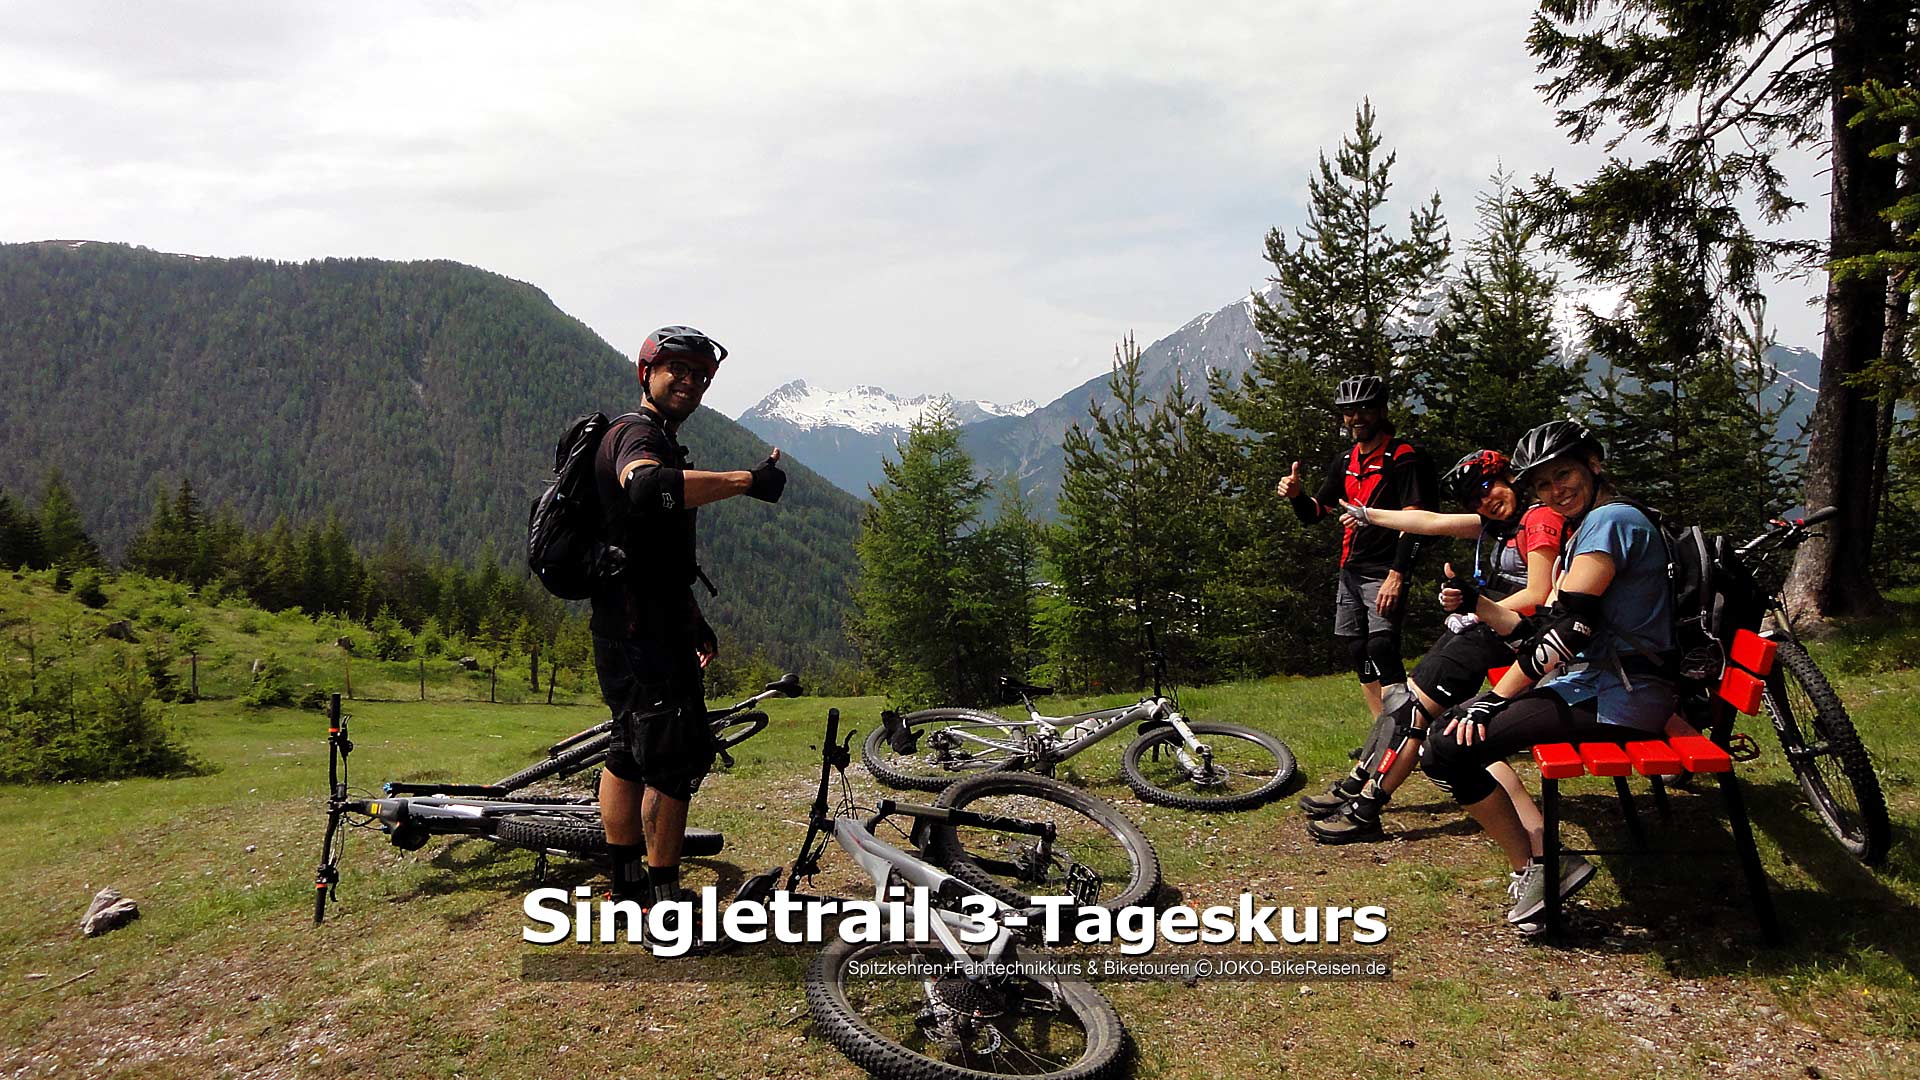 MTB-Singletrail 3-Tageskurs: Immer viel Spaß in diesen Tagen, Fahrtechnik verbessern & tolle Biketouren erleben mit herrlichem Gebirgspanoramen.